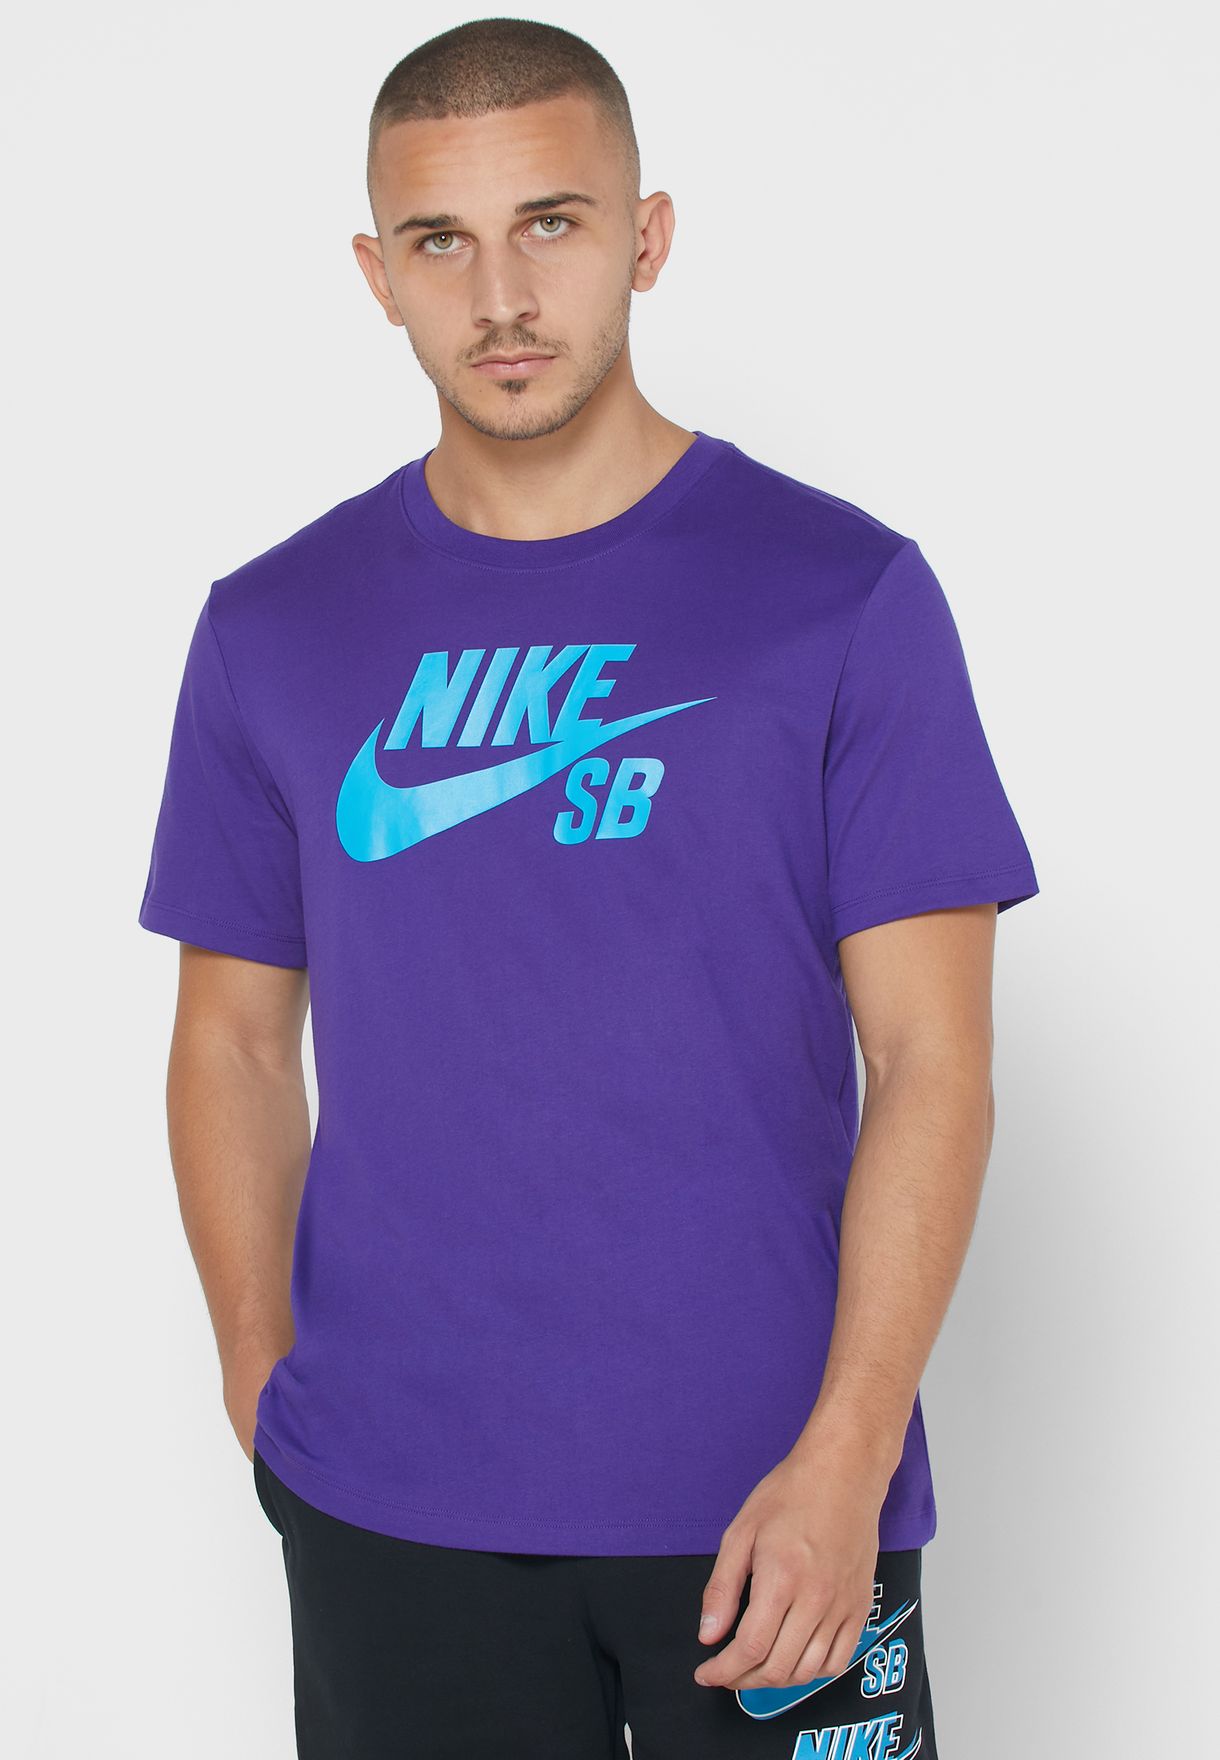 purple dri fit shirt